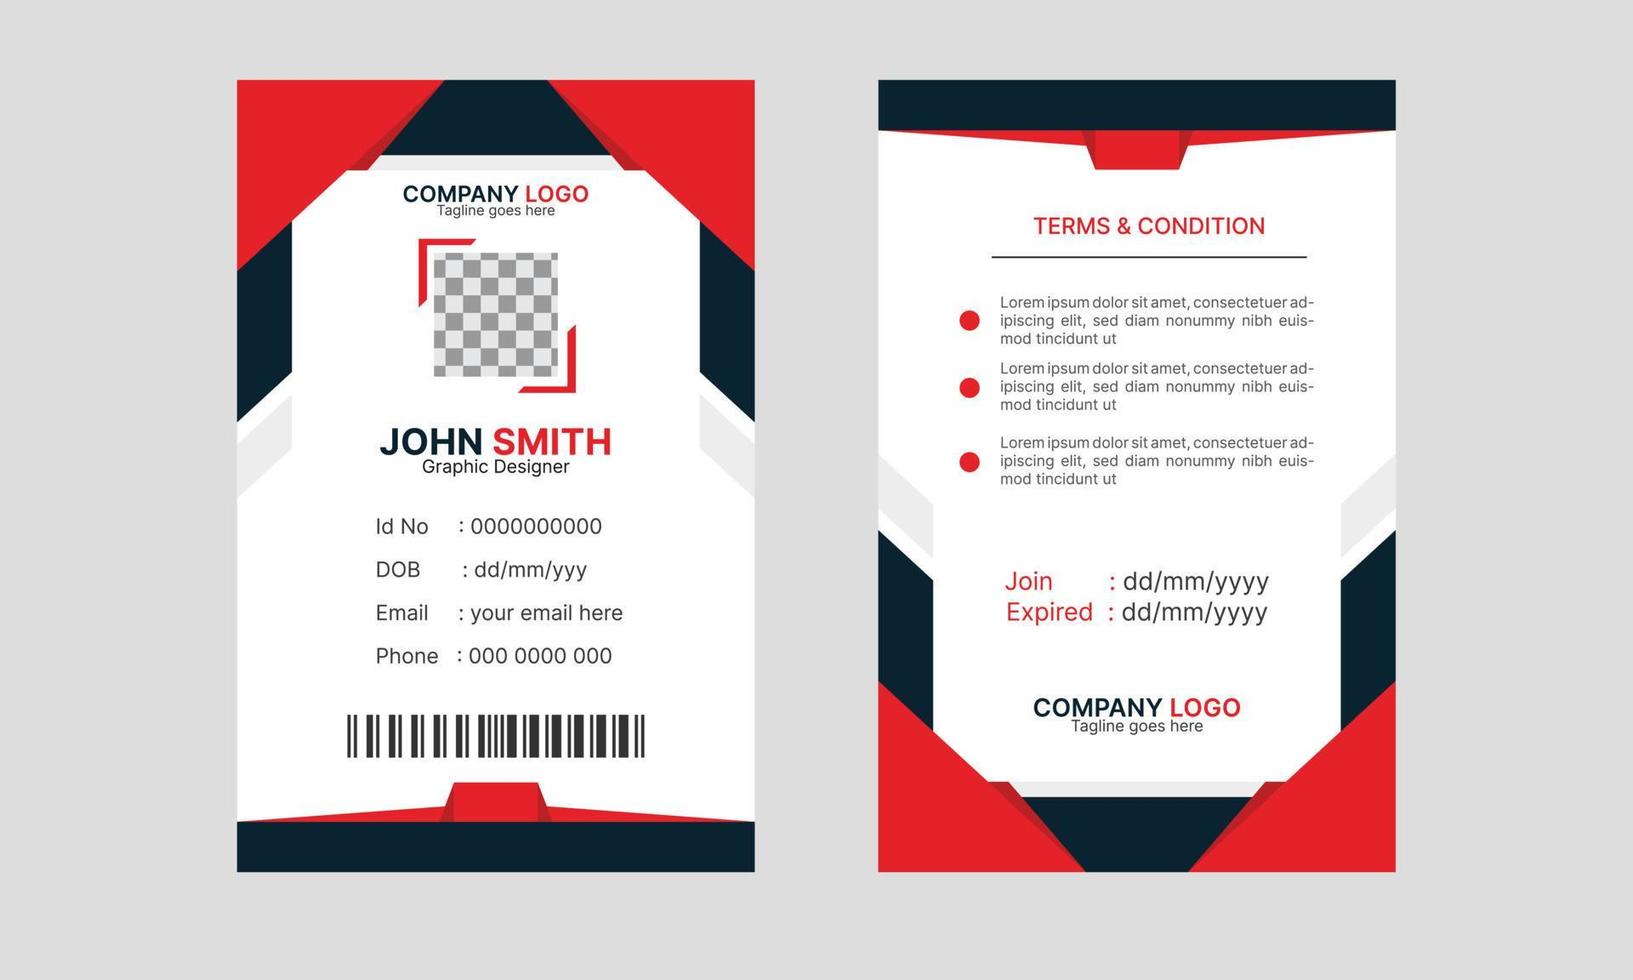 vector de plantilla de diseño de tarjeta de identificación abstracta moderna corporativa para empleado. plantilla de tarjeta de identidad de empleado de negocios creativos.